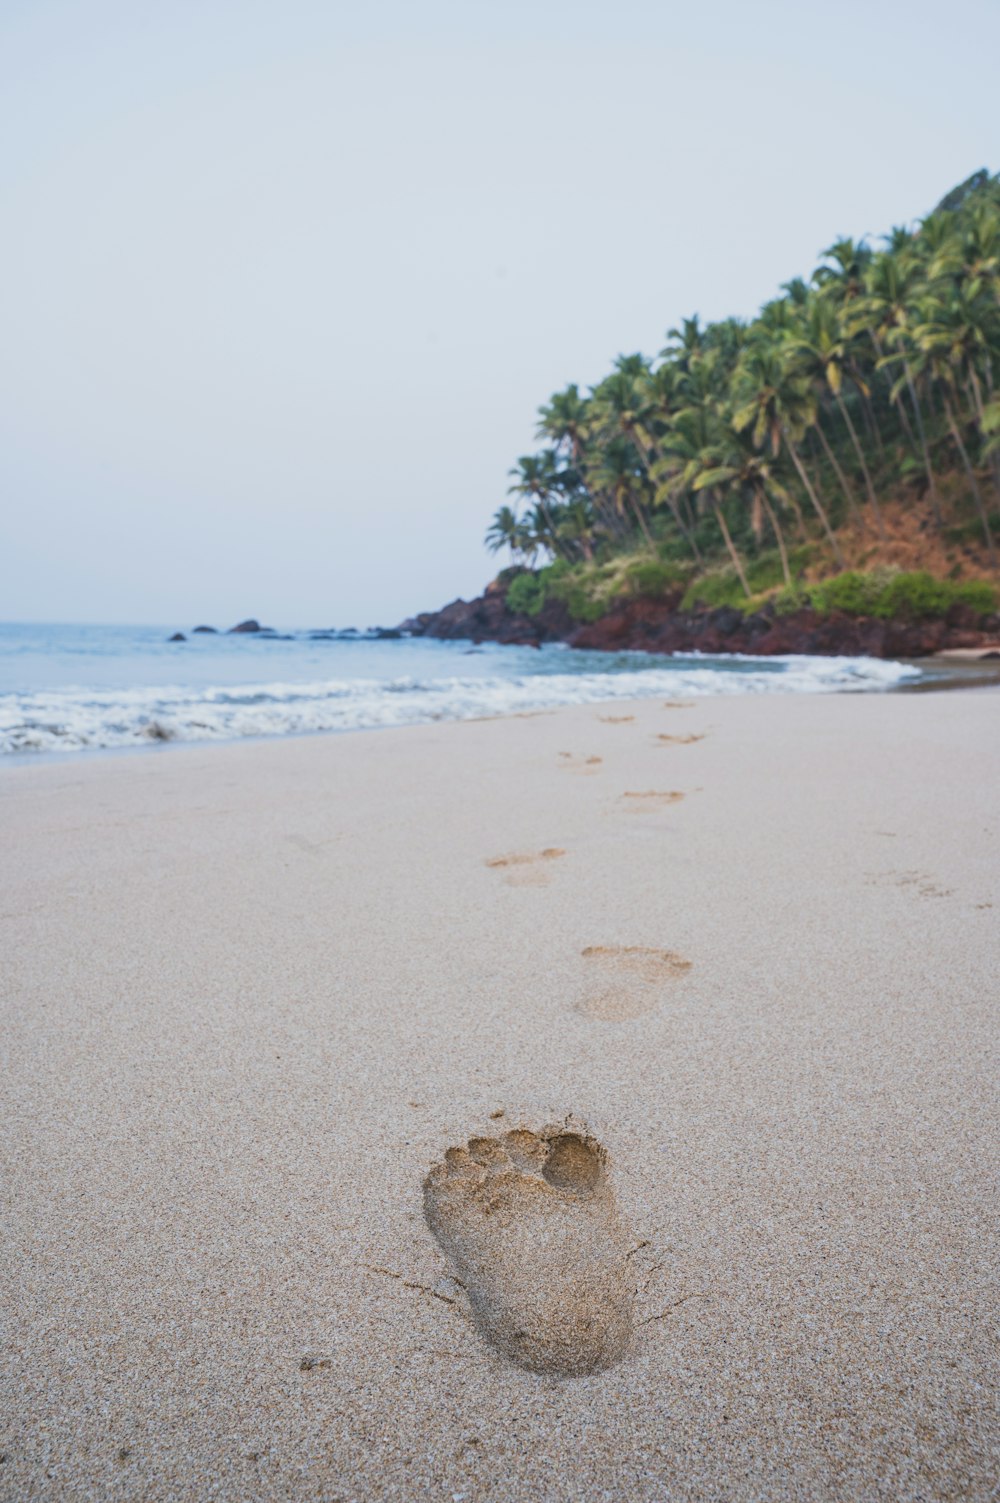 les empreintes de pieds d’une personne dans le sable sur une plage